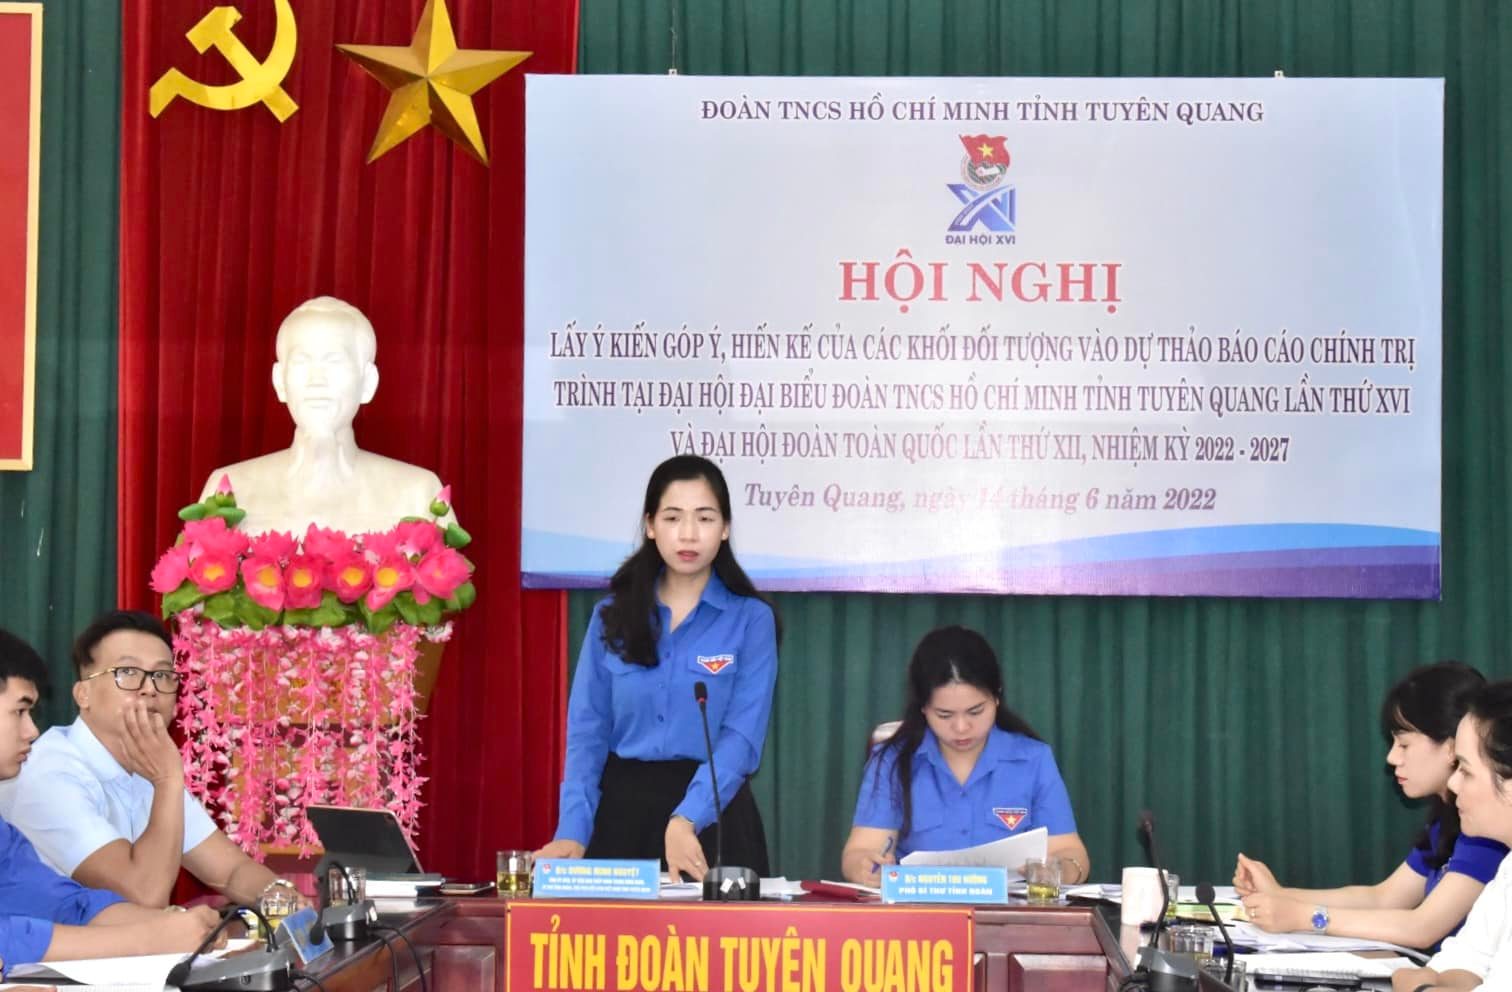 Hội nghị lấy ý kiến góp ý, hiến kế của các khối đối tượng để xây dựng dự thảo Báo cáo chính trị trình tại Đại hội đại biểu Đoàn TNCS Hồ Chí Minh tỉnh Tuyên Quang lần thứ XVI và Đại hội Đoàn toàn quốc lần thứ XII, nhiệm kỳ 2022-2027